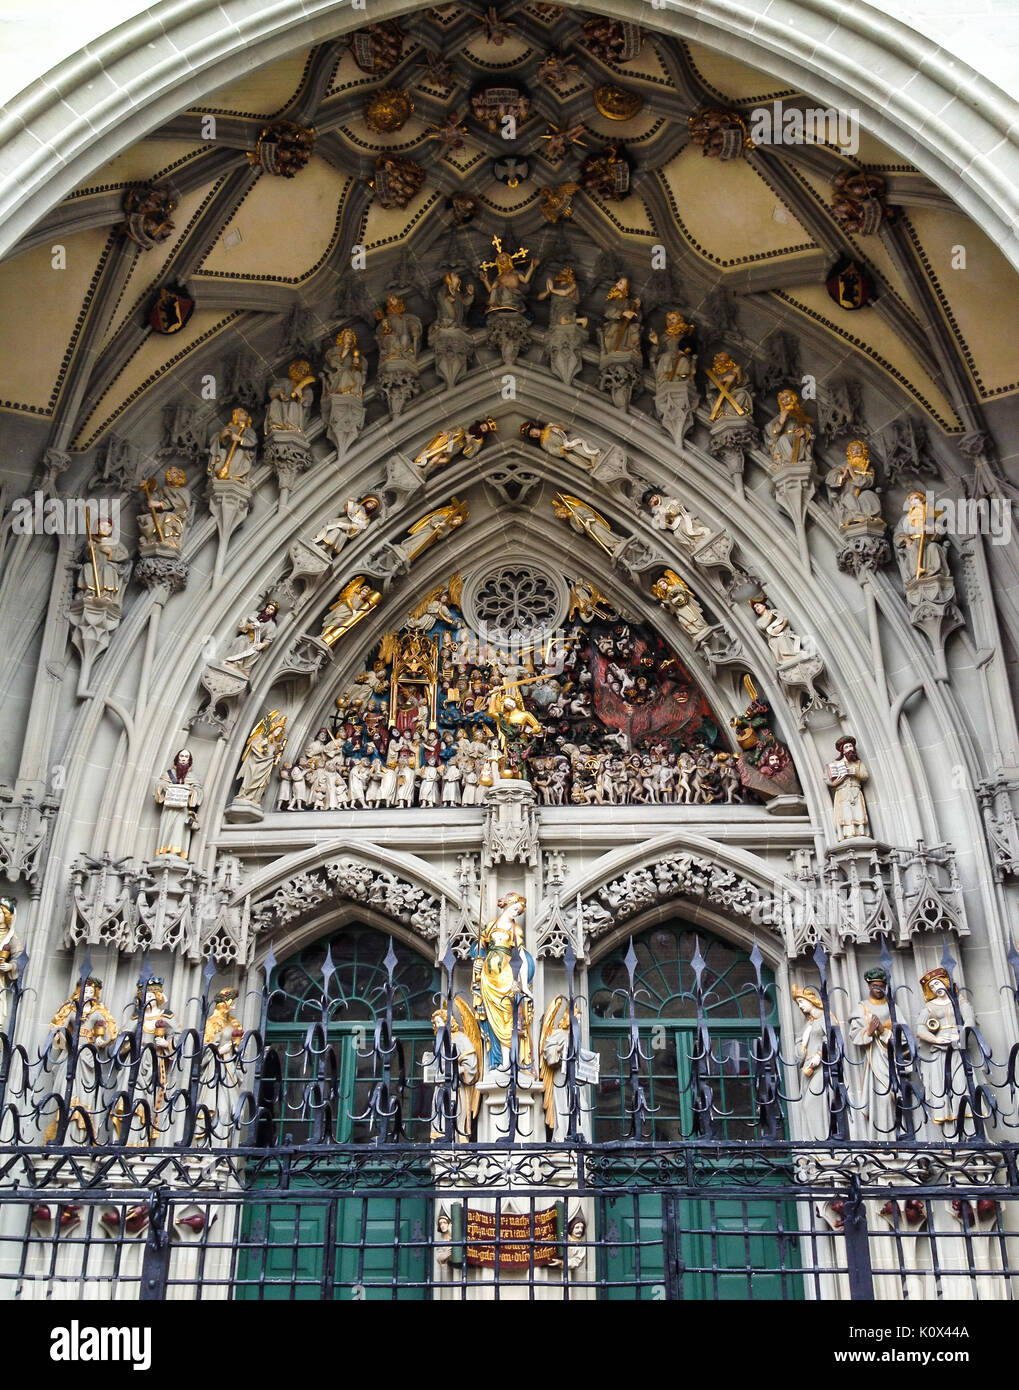 La remarquable sculpture, le Jugement Dernier, sculpté au-dessus de l'entrée principale de la cathédrale Saint-vincent (Munster Kirche) à Münsterplatz, Berne, Switzerla Banque D'Images